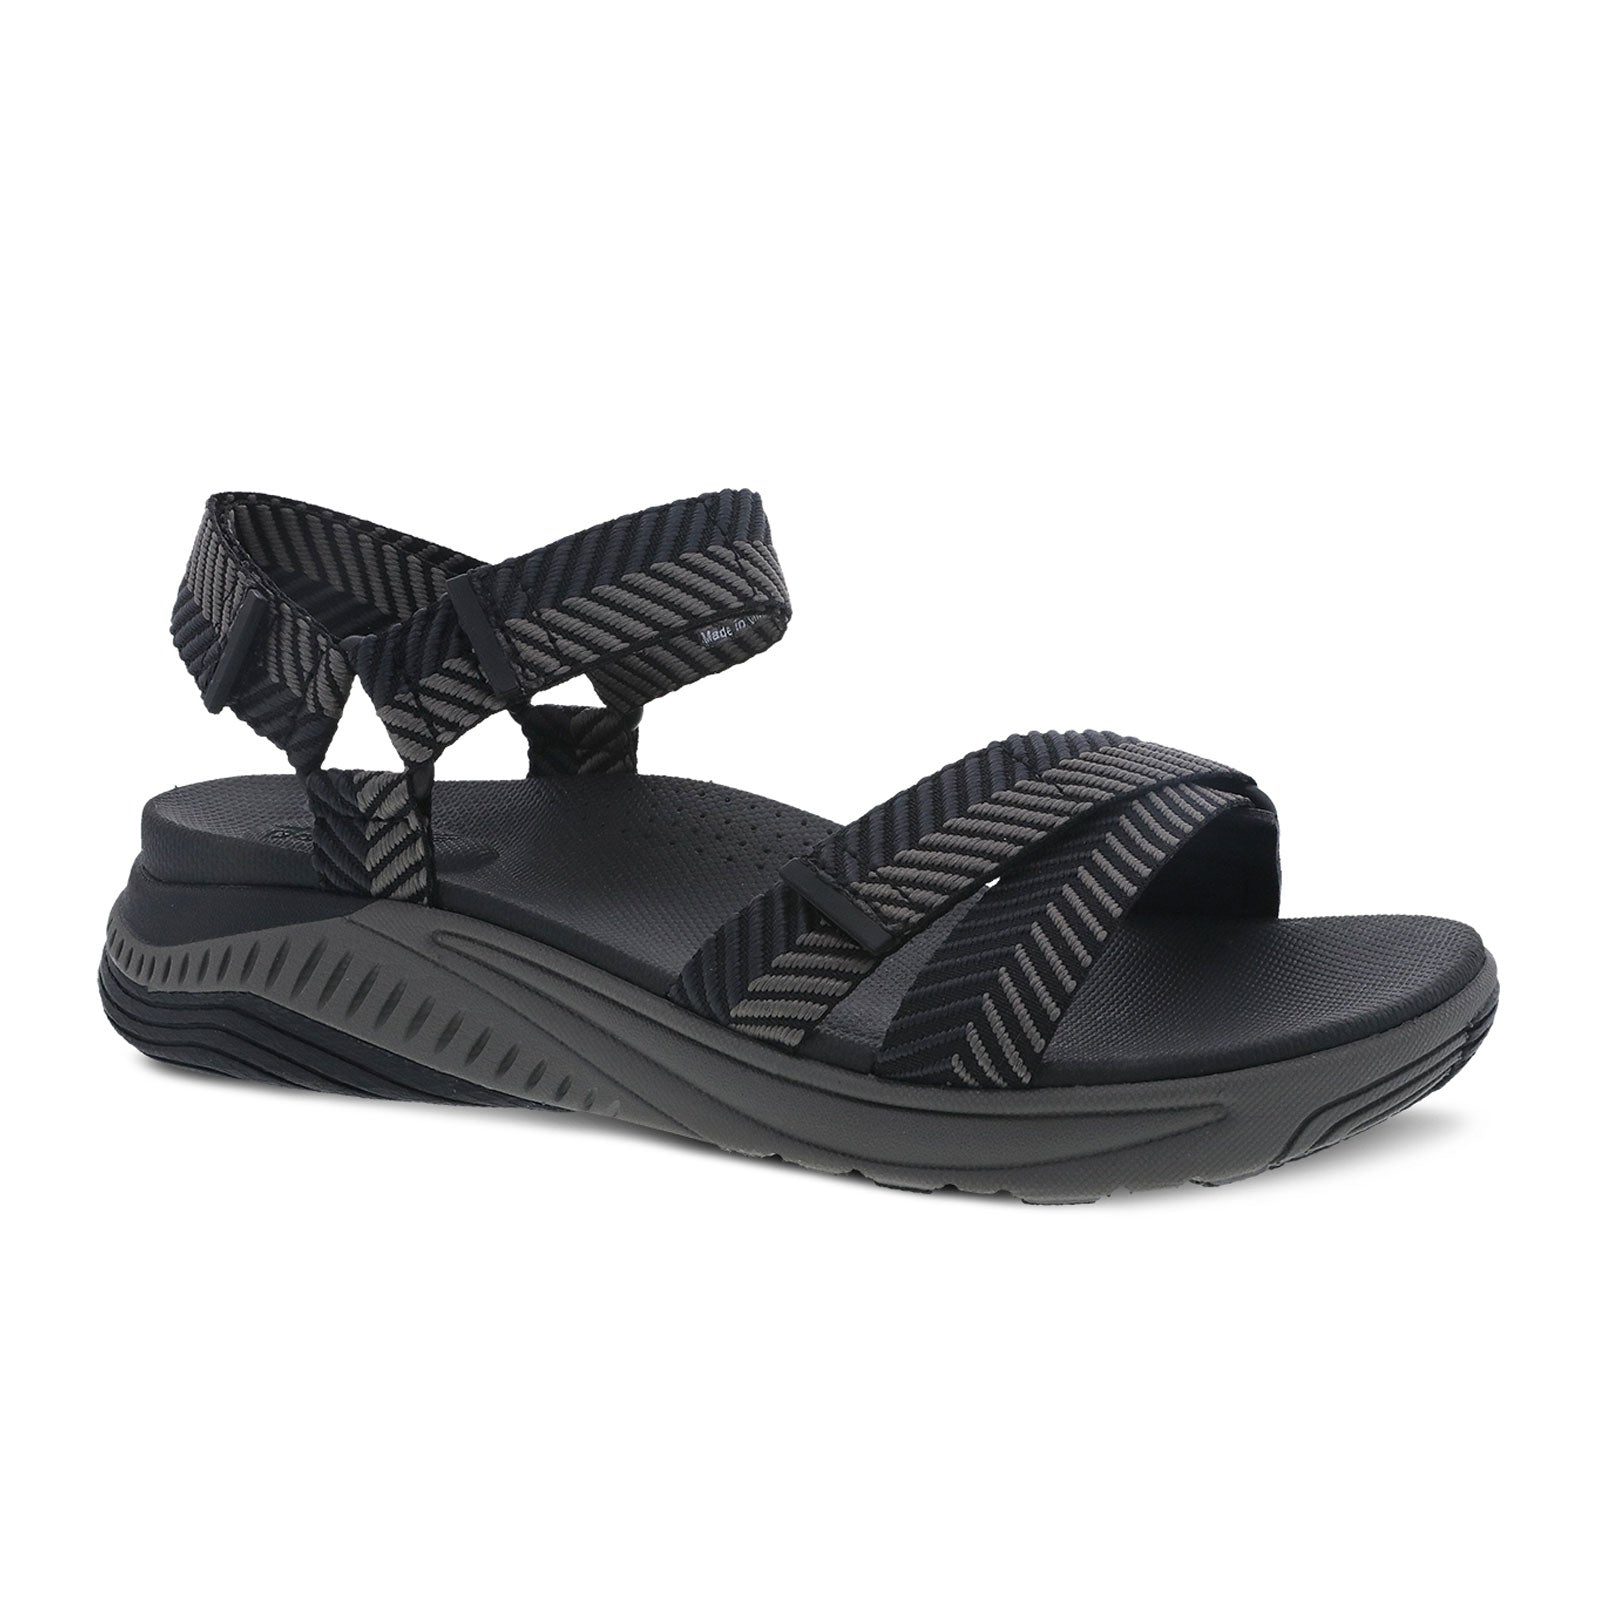 Dansko Racquel Backstrap Sandal (Women) - Black Herringbone Webbing Sandals - Backstrap Sandals - The Heel Shoe Fitters